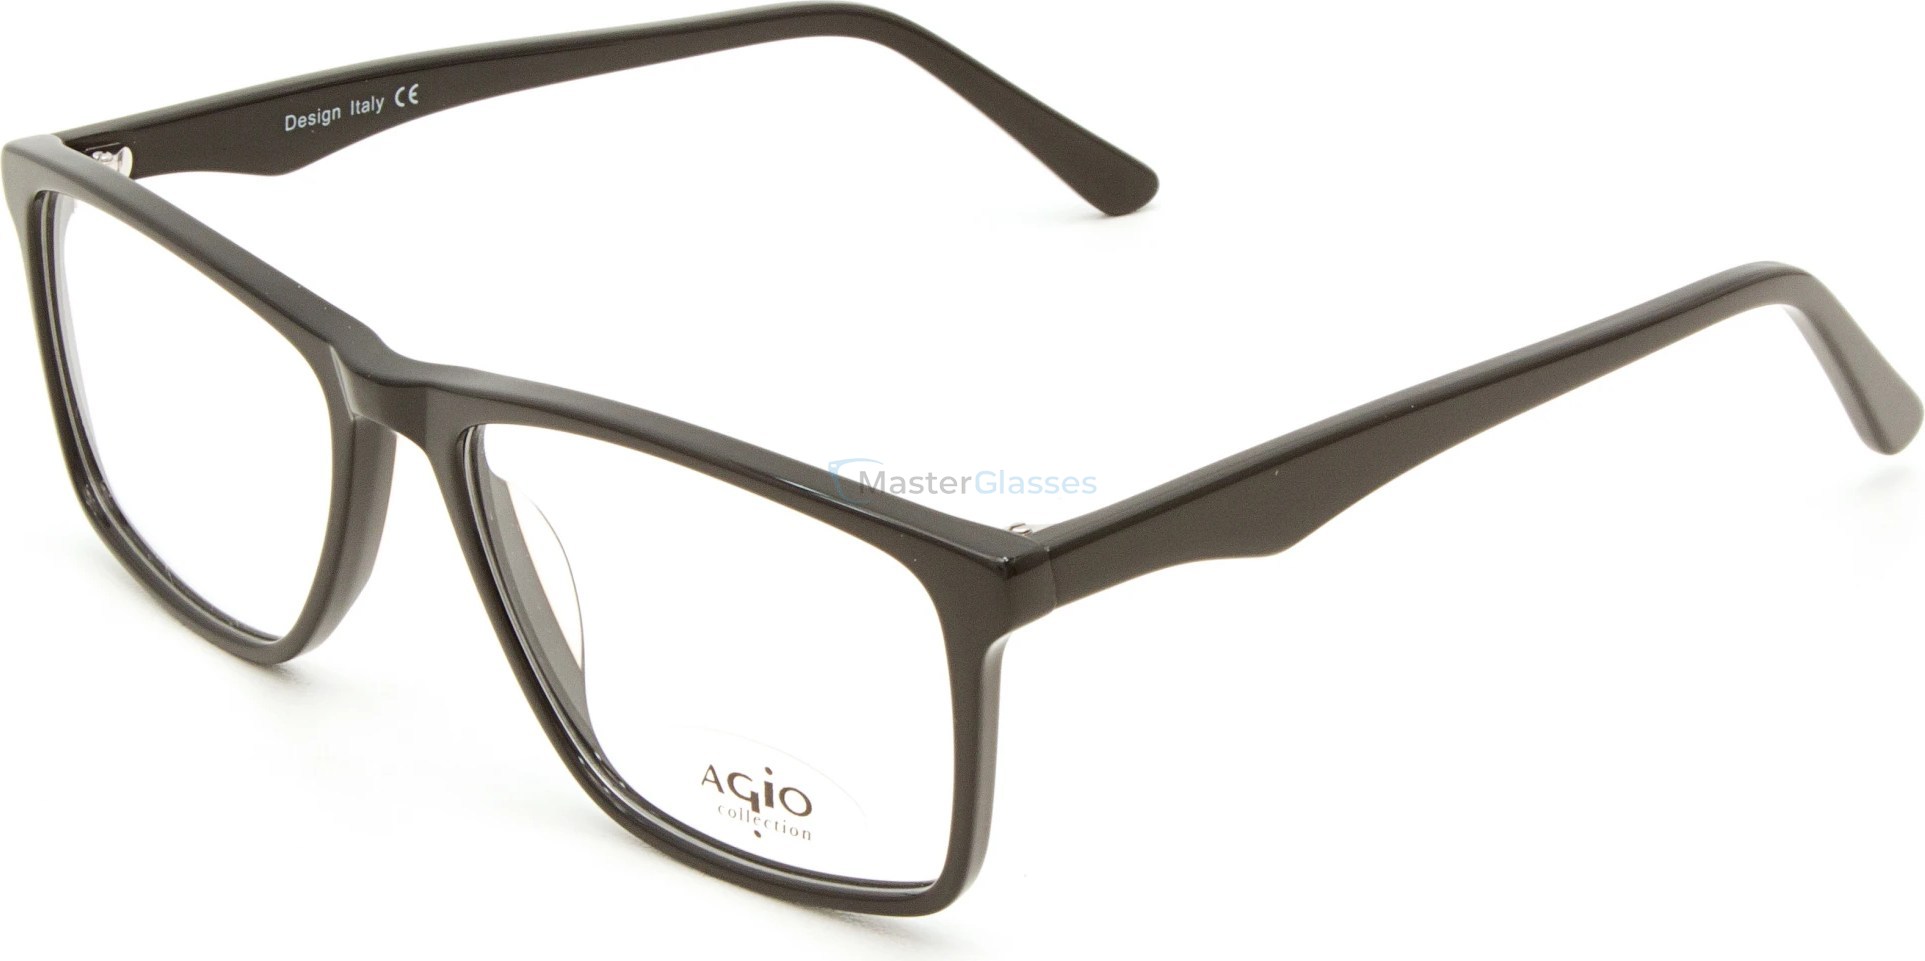  AGIO AG 60106P c1